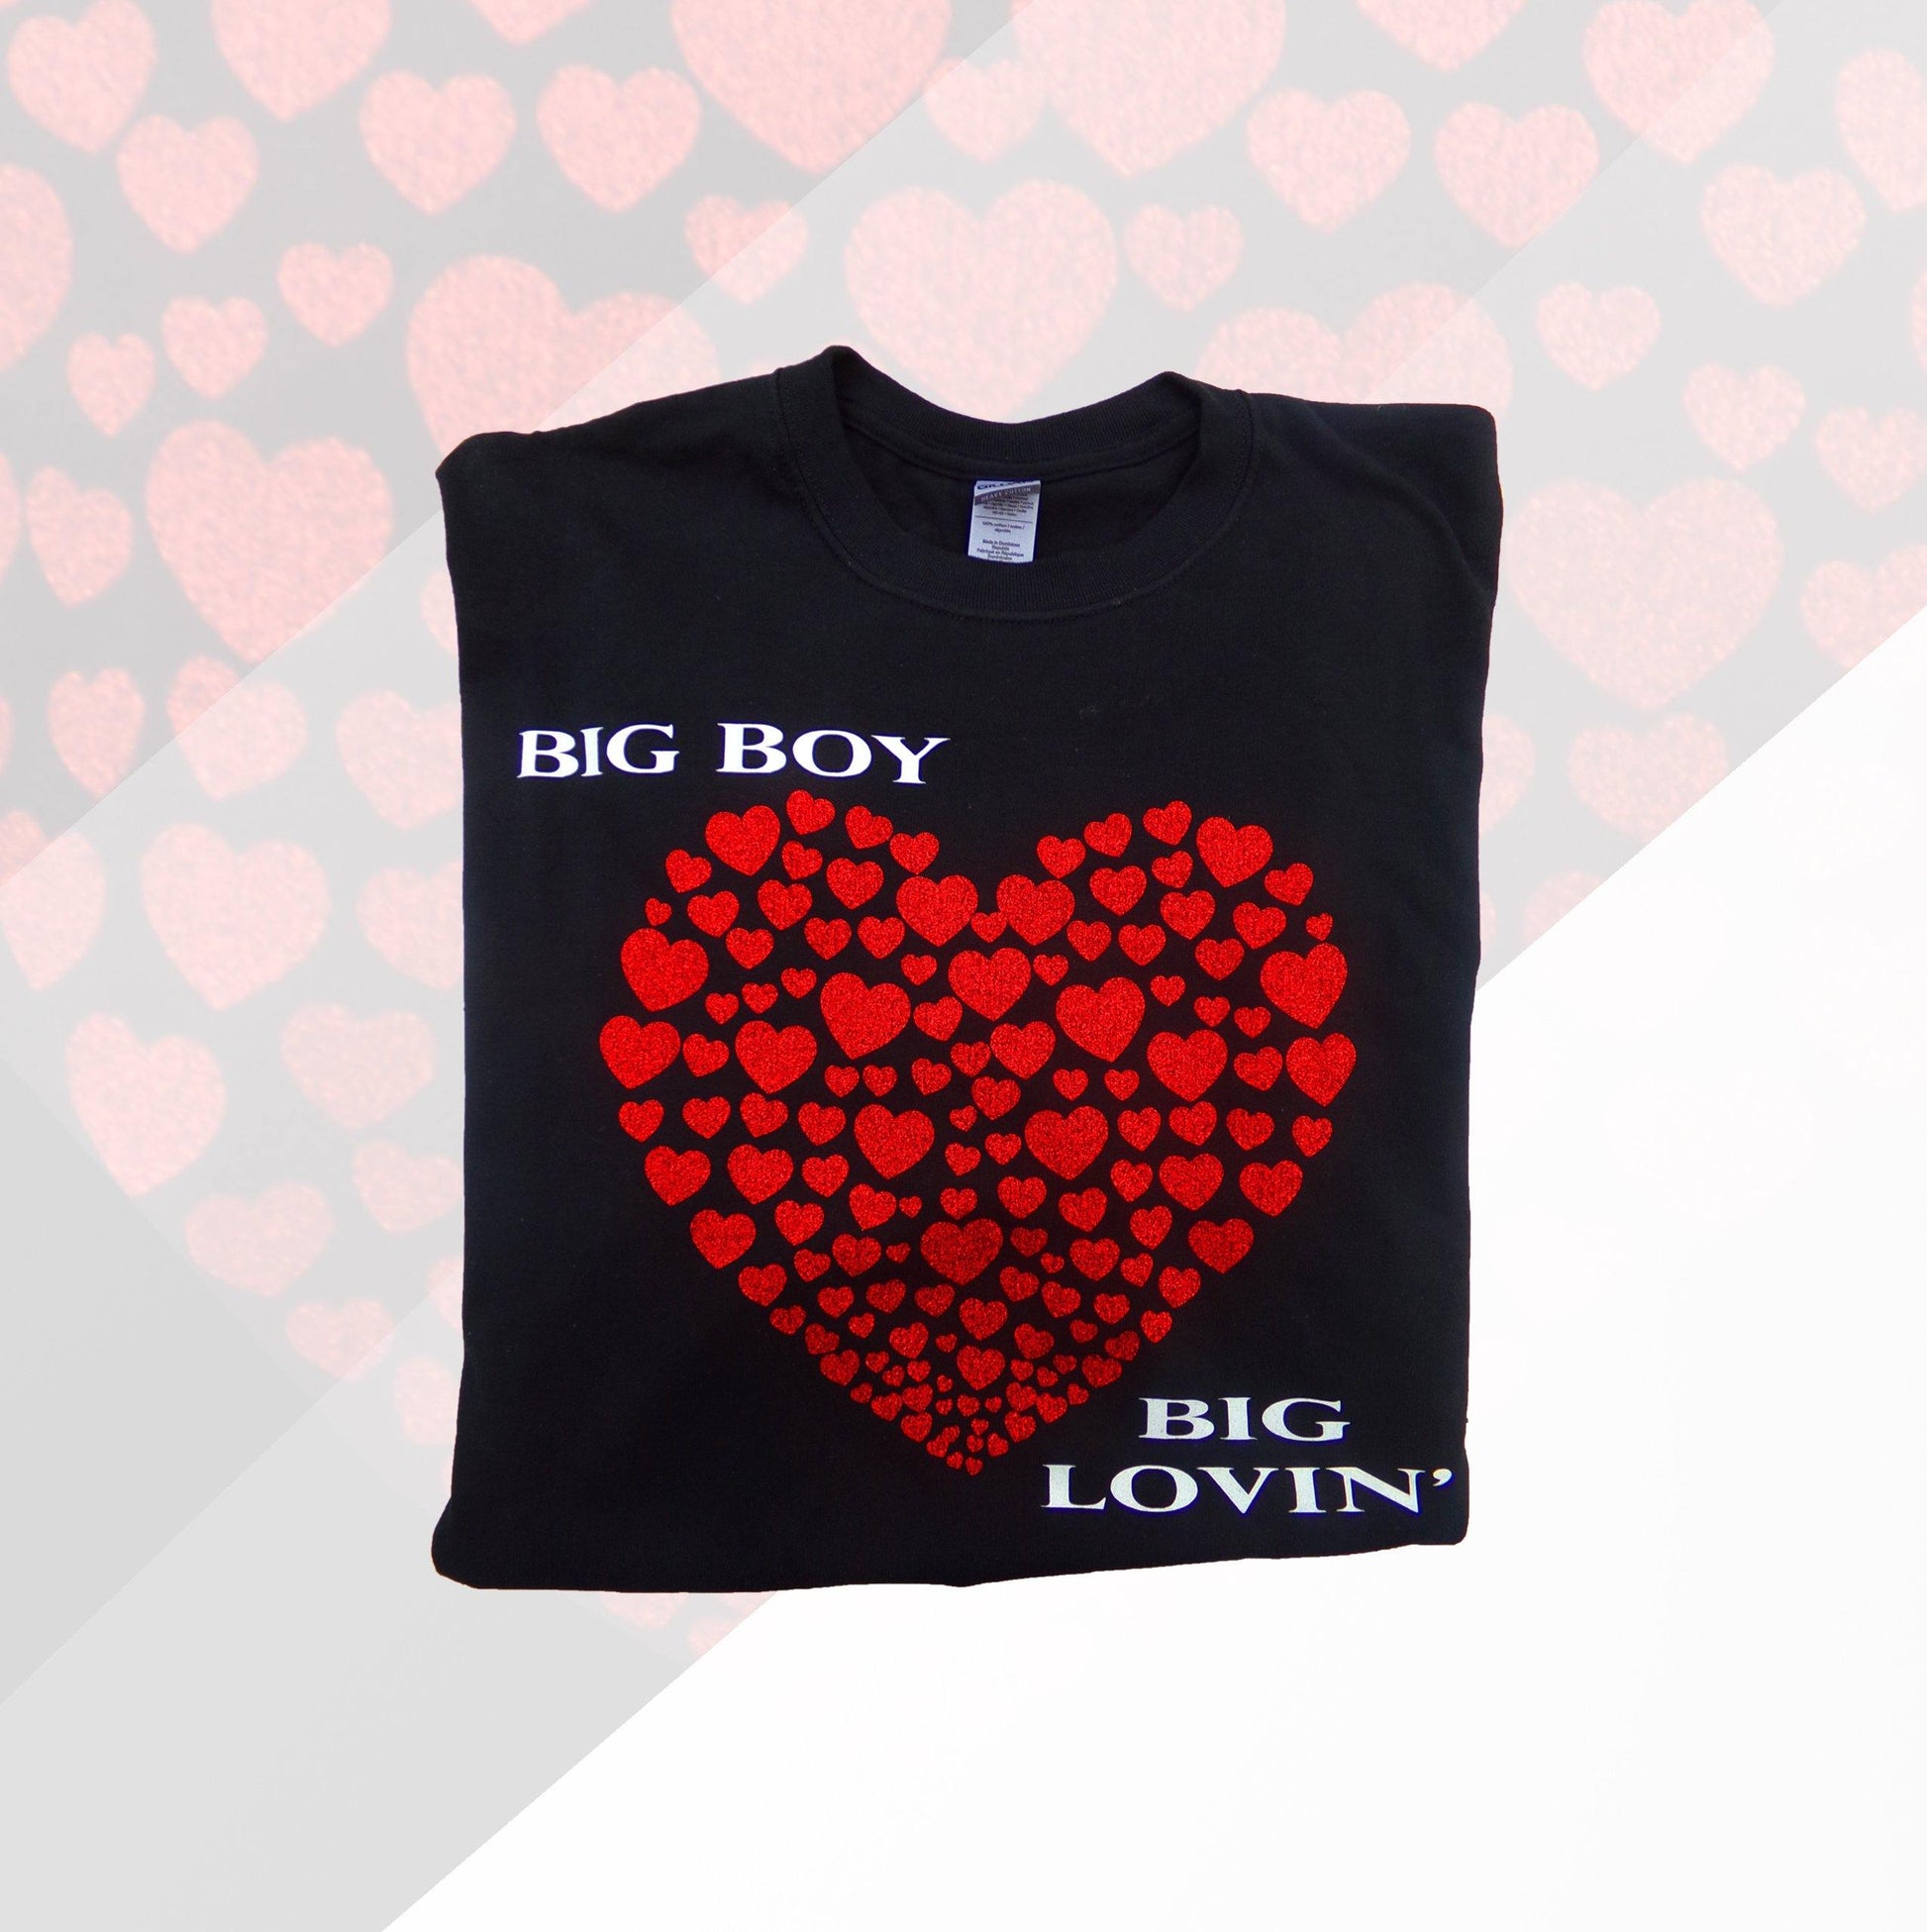 BIG Boy BIG Lovin' The Tee - The BIG Boy Shop